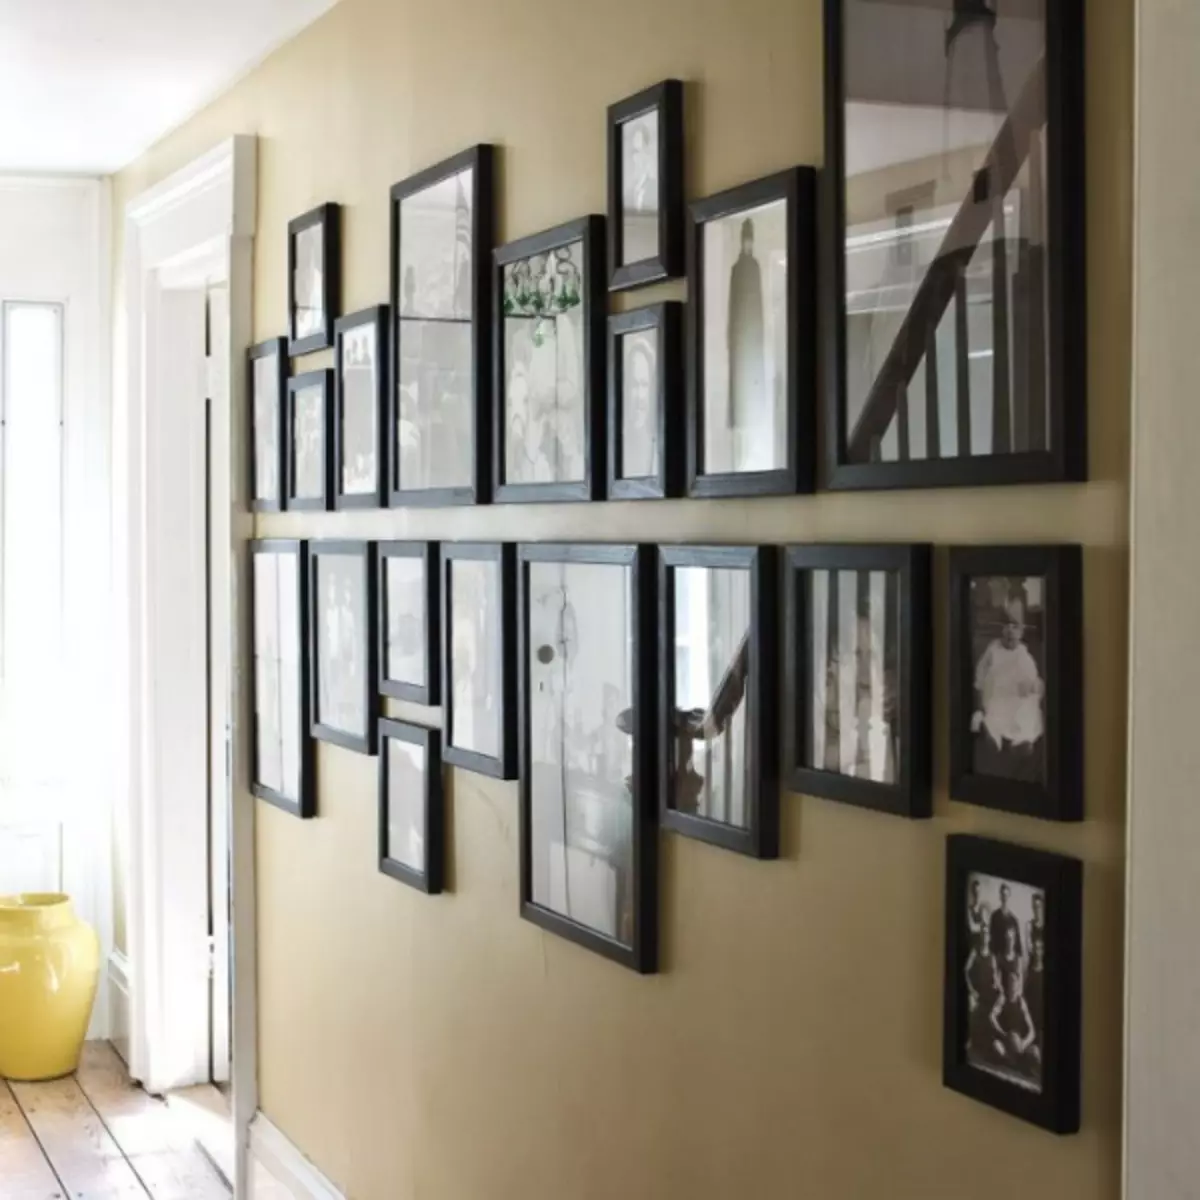 एक खाली दीवार कैसे सजाने के लिए - डिजाइन विचारों की 70 तस्वीरें